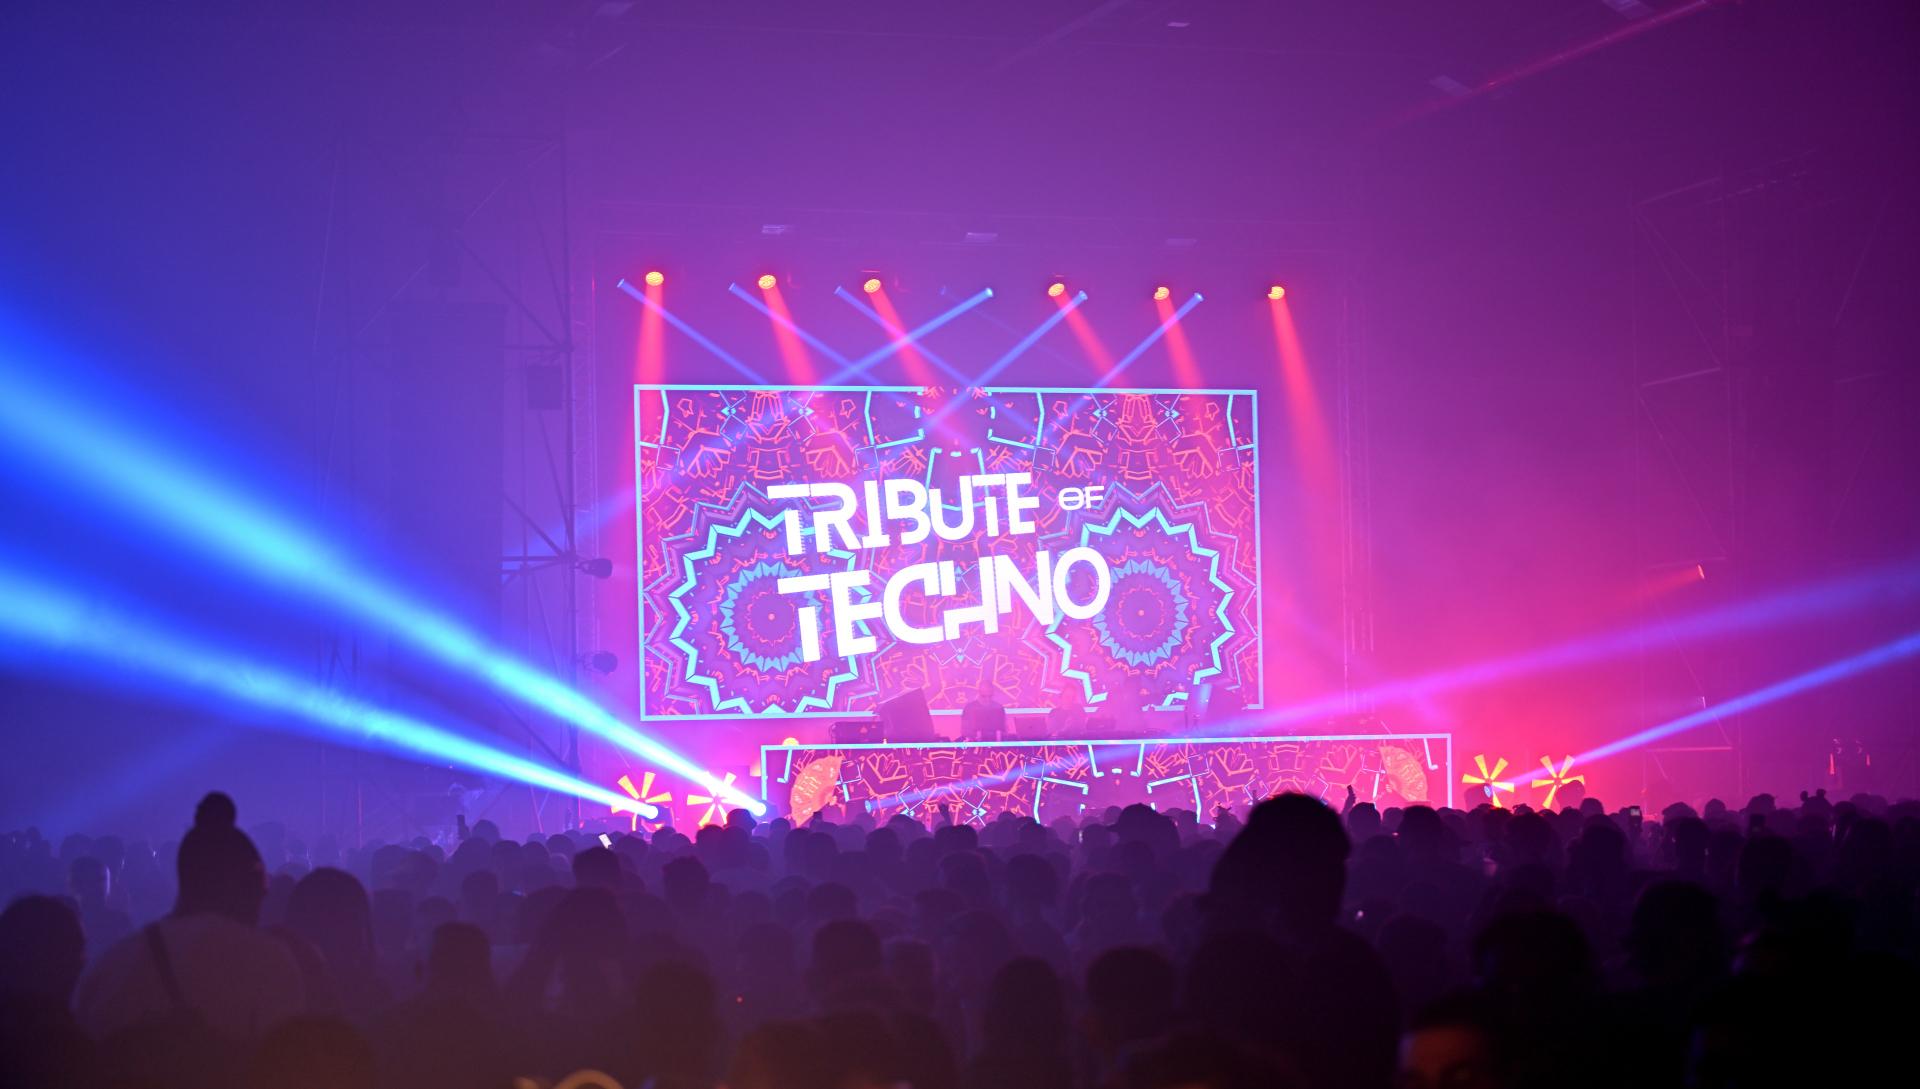 Tribute of Techno